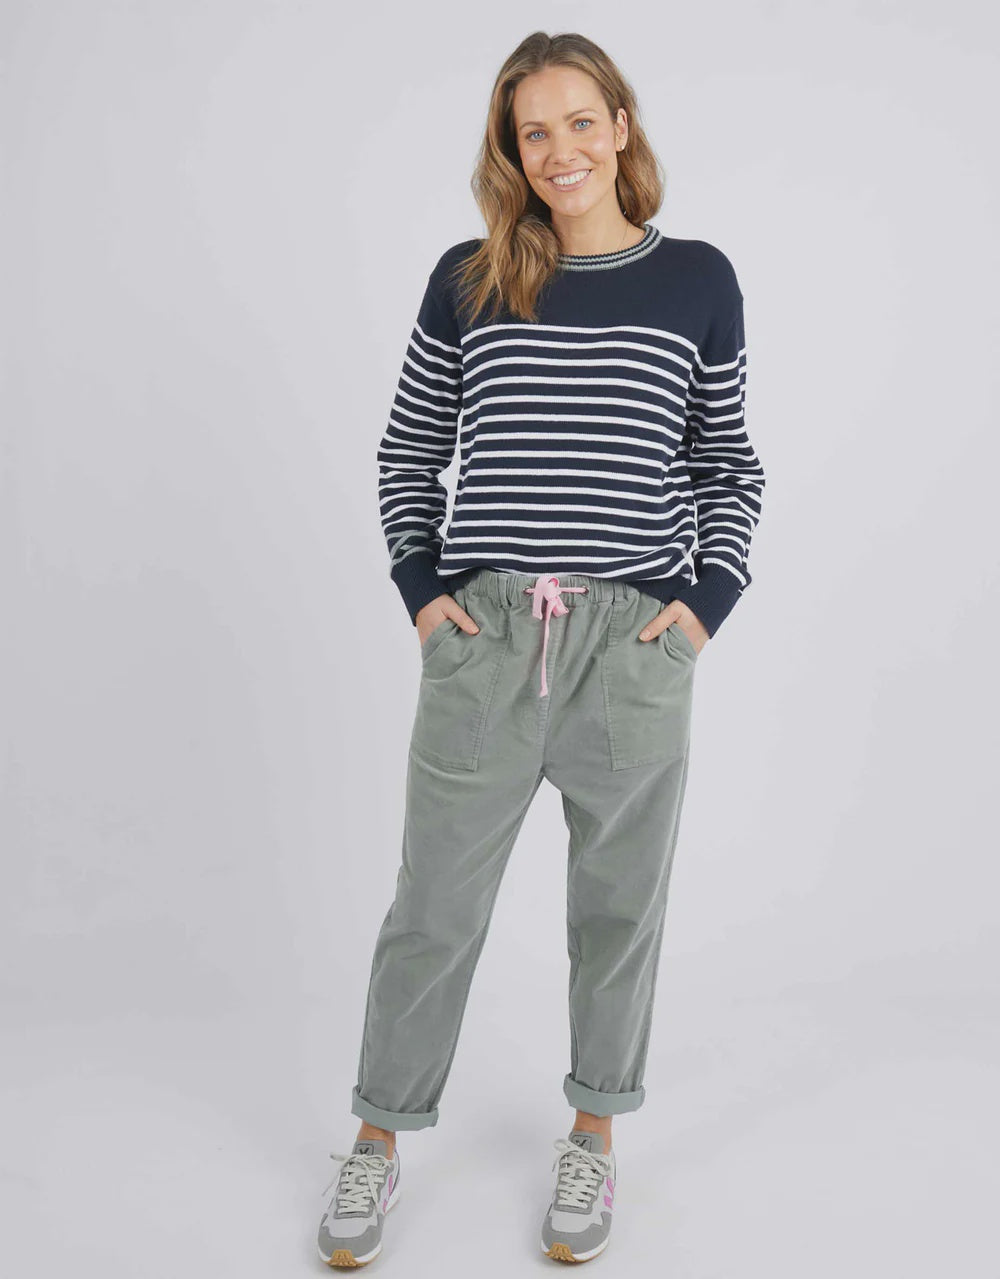 Portia stripe knit - navy/white